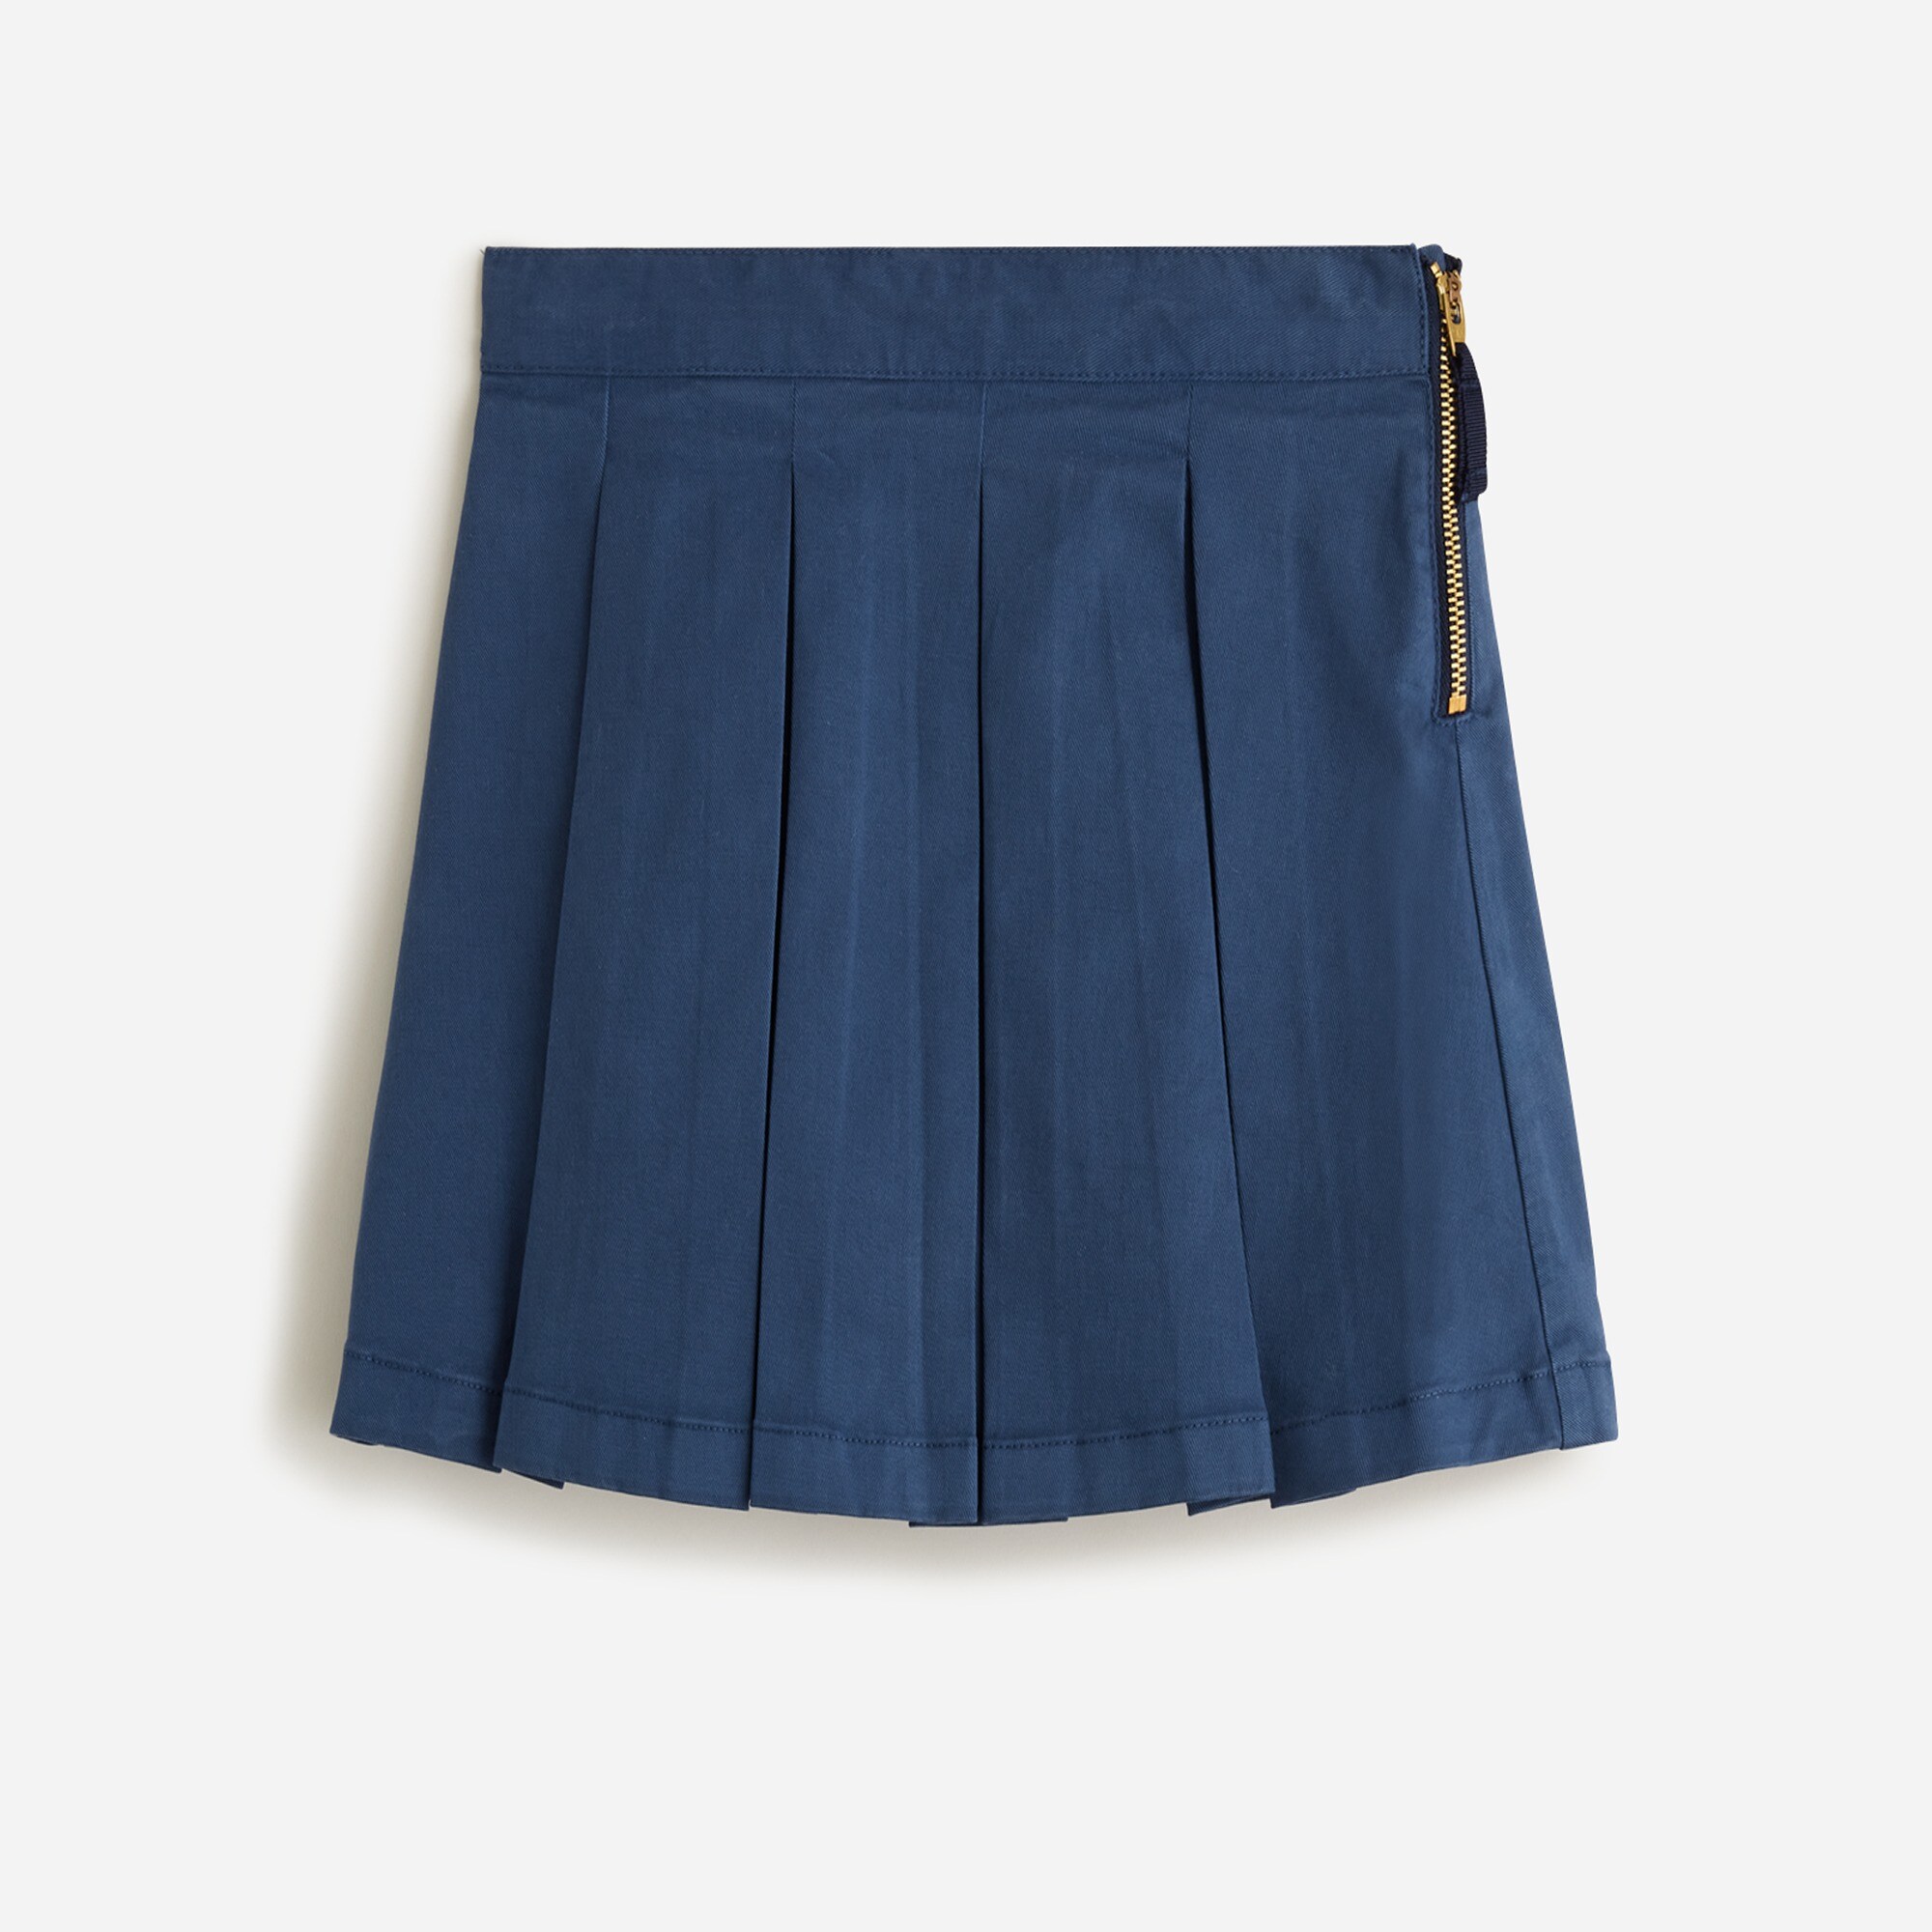  Girls' pleated chino skirt